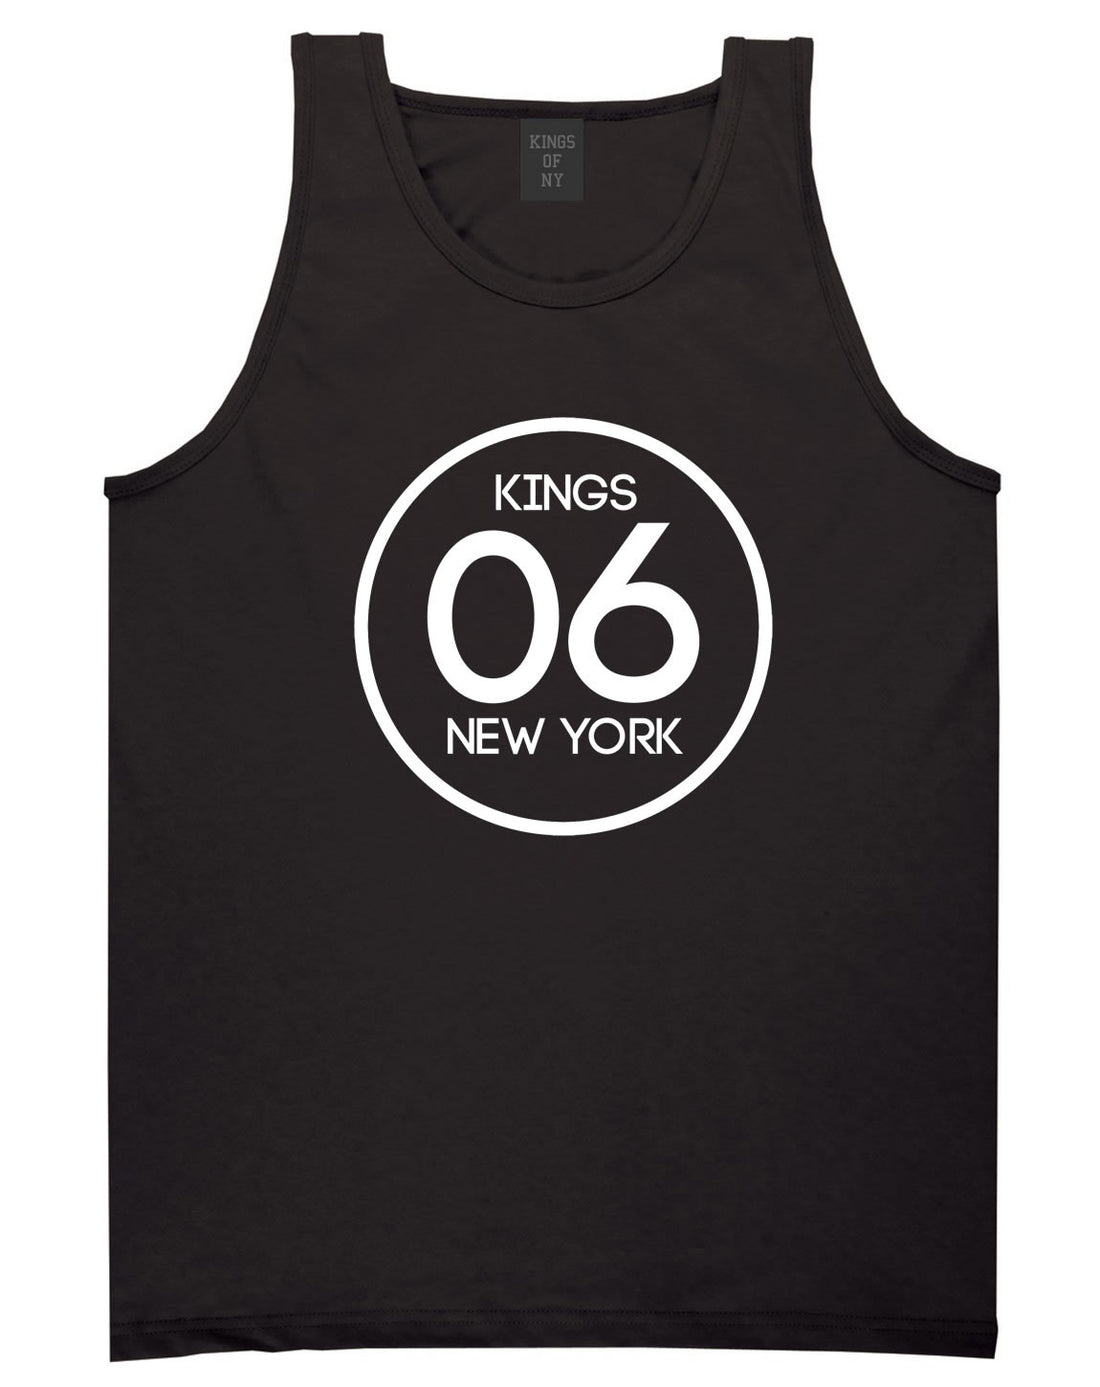 Kings Of NY 2006 Logo Tank Top in Black